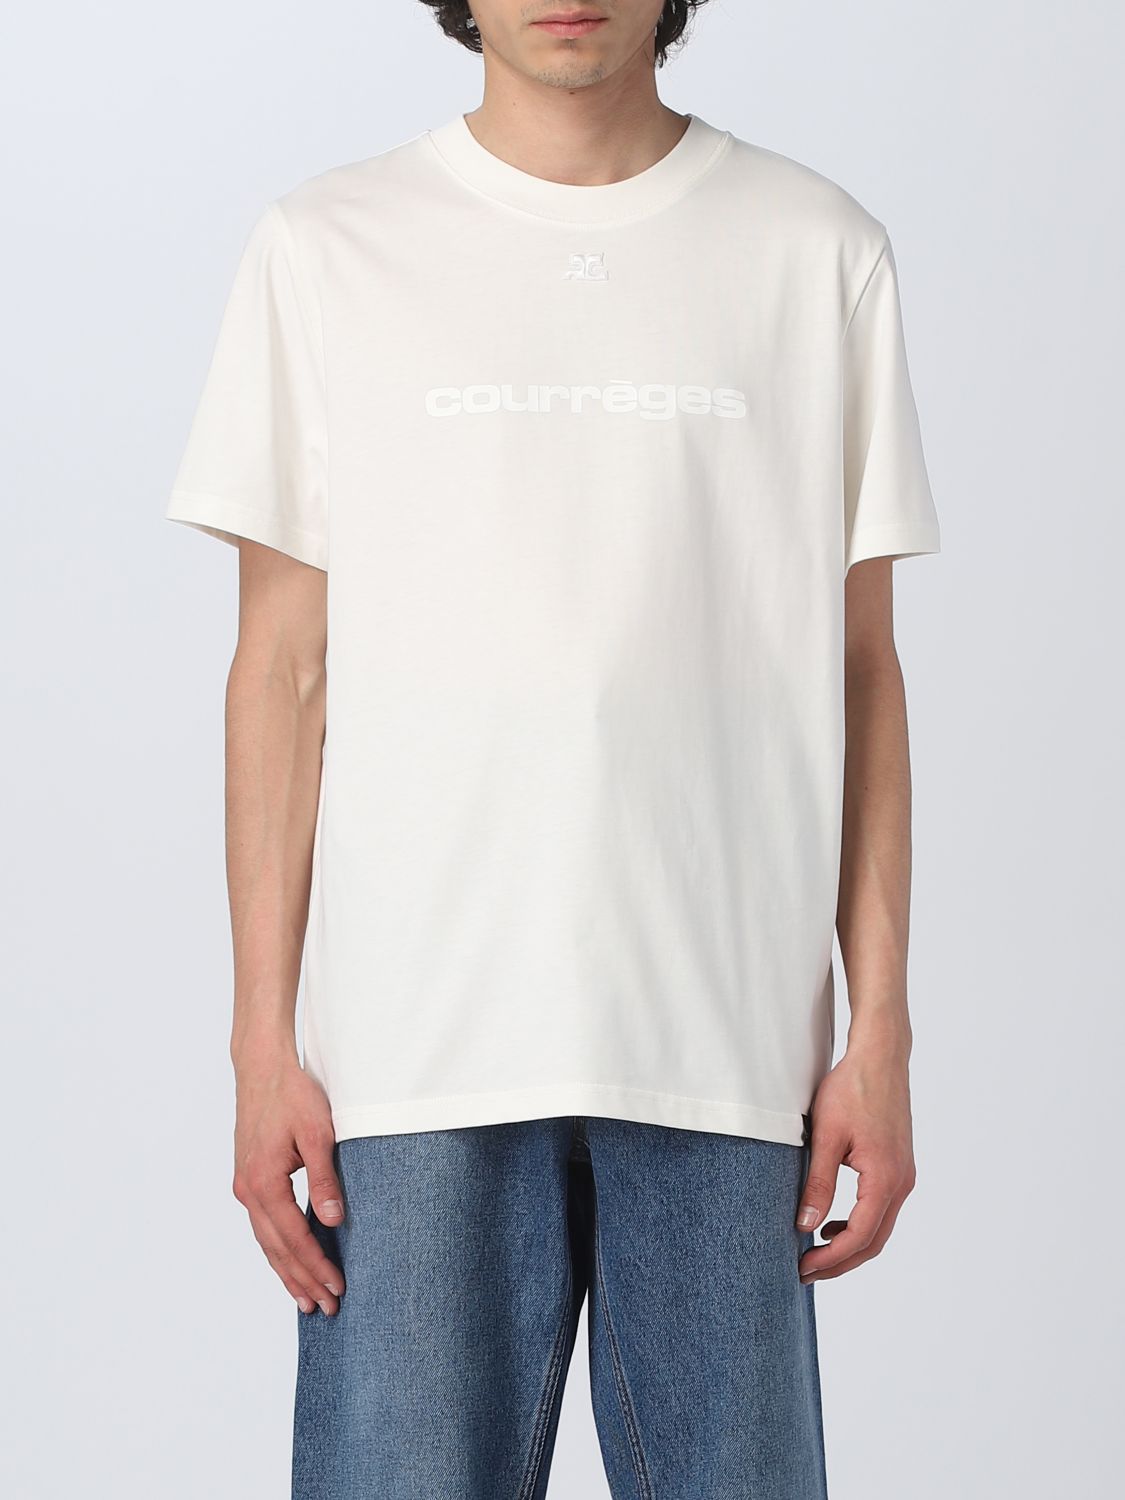 T-shirt Courrèges: T-shirt Courrèges homme blanc 1